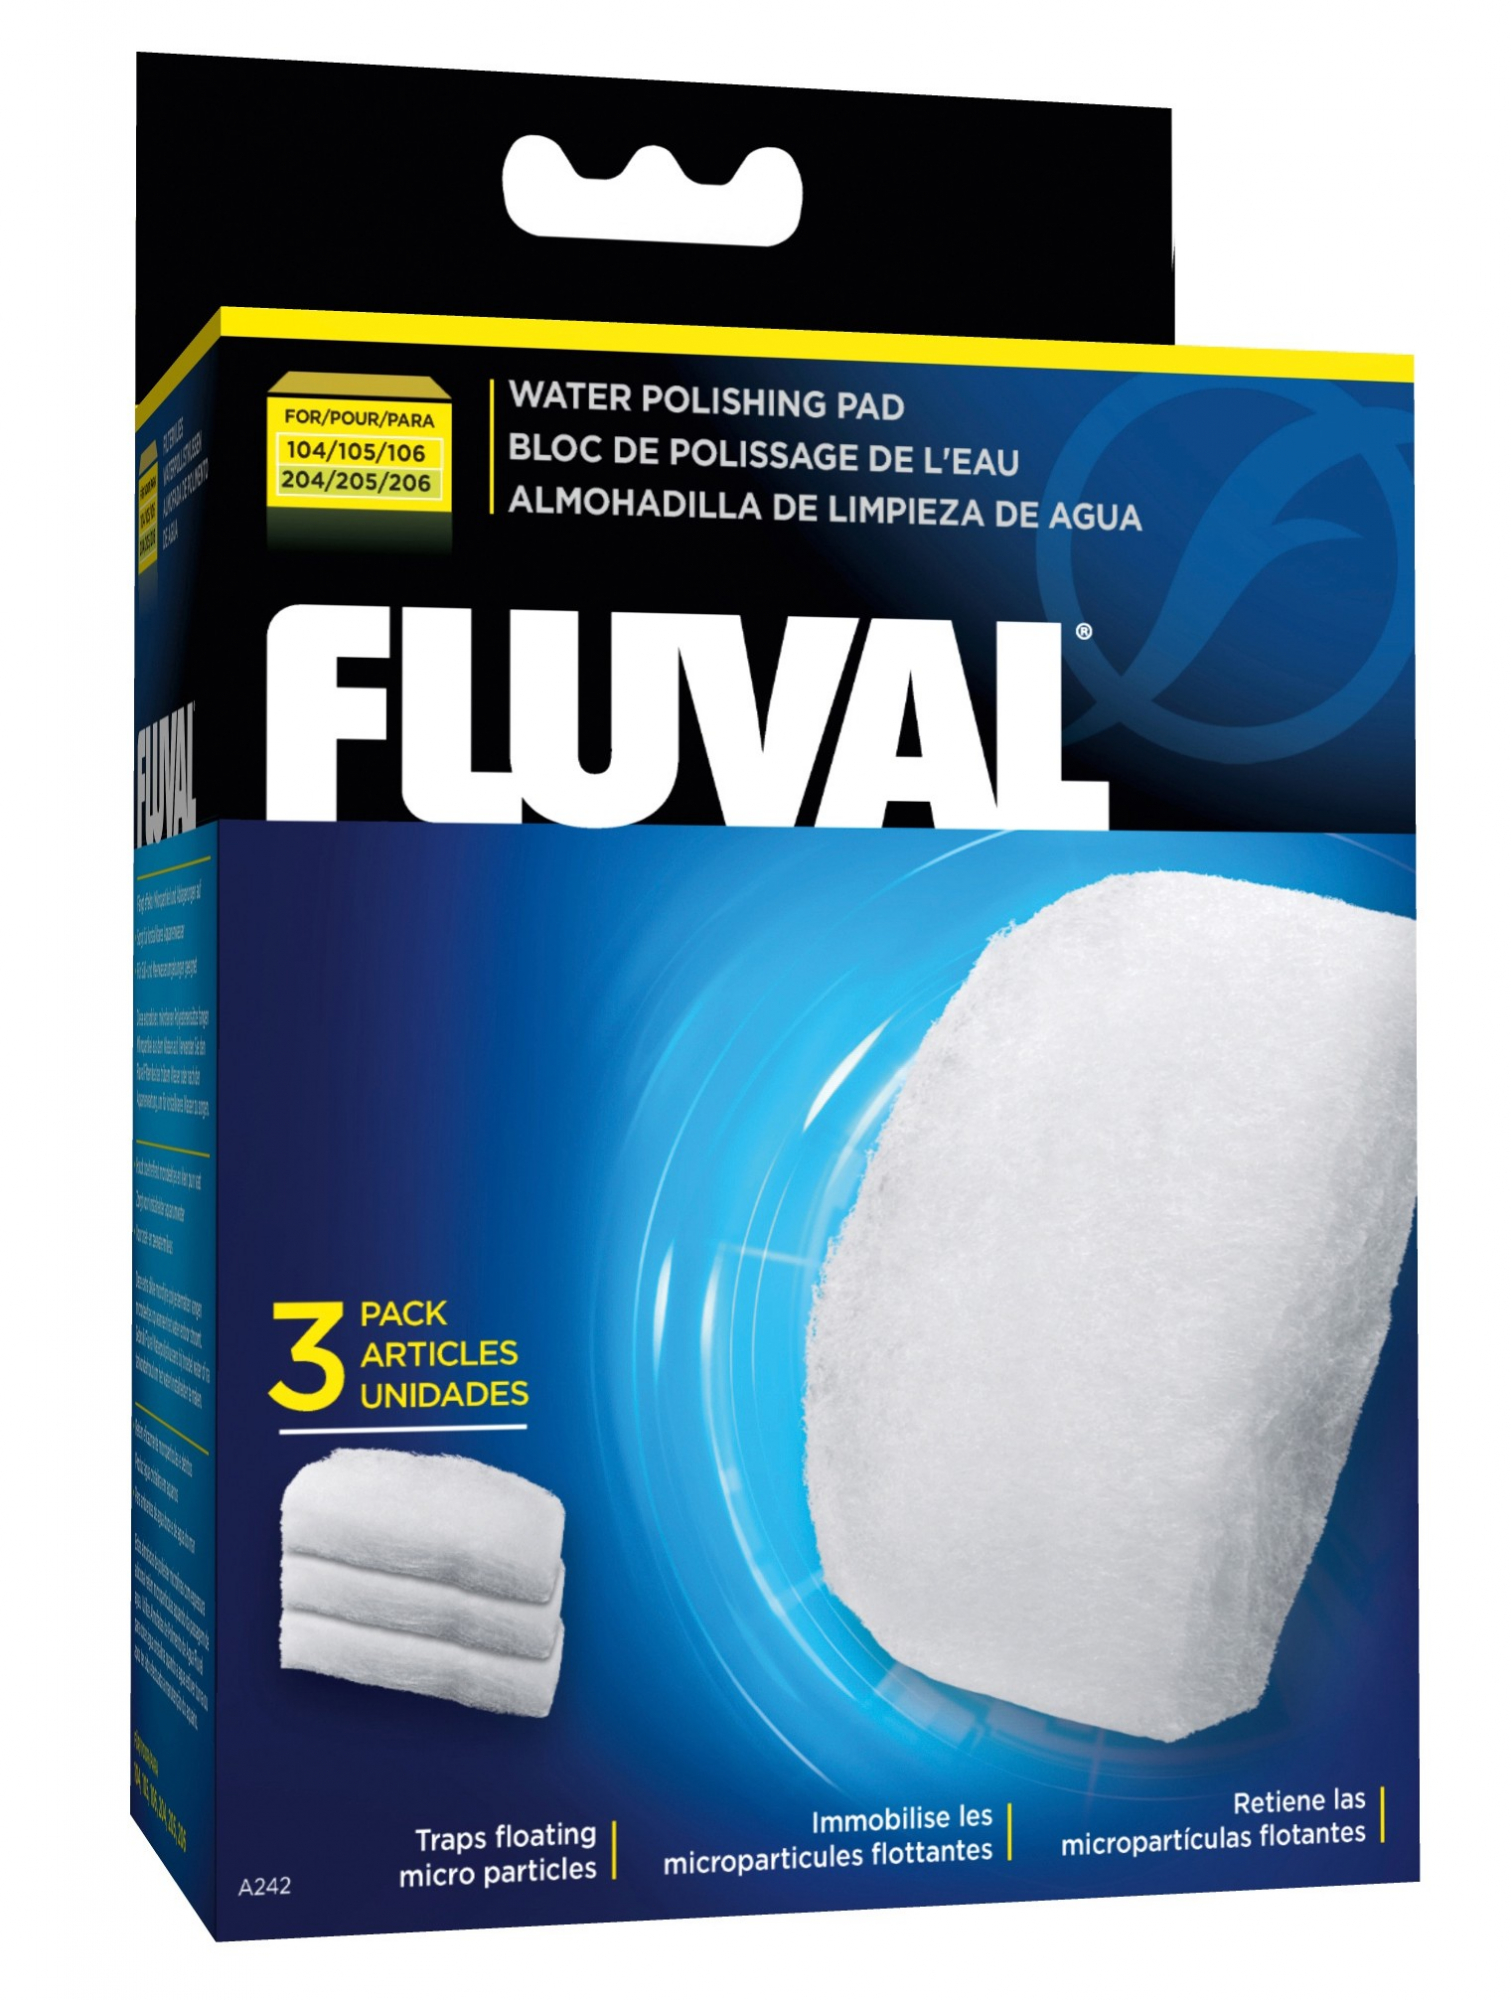 Filterwolle FLUVAL - um das Wasser zu reinigen